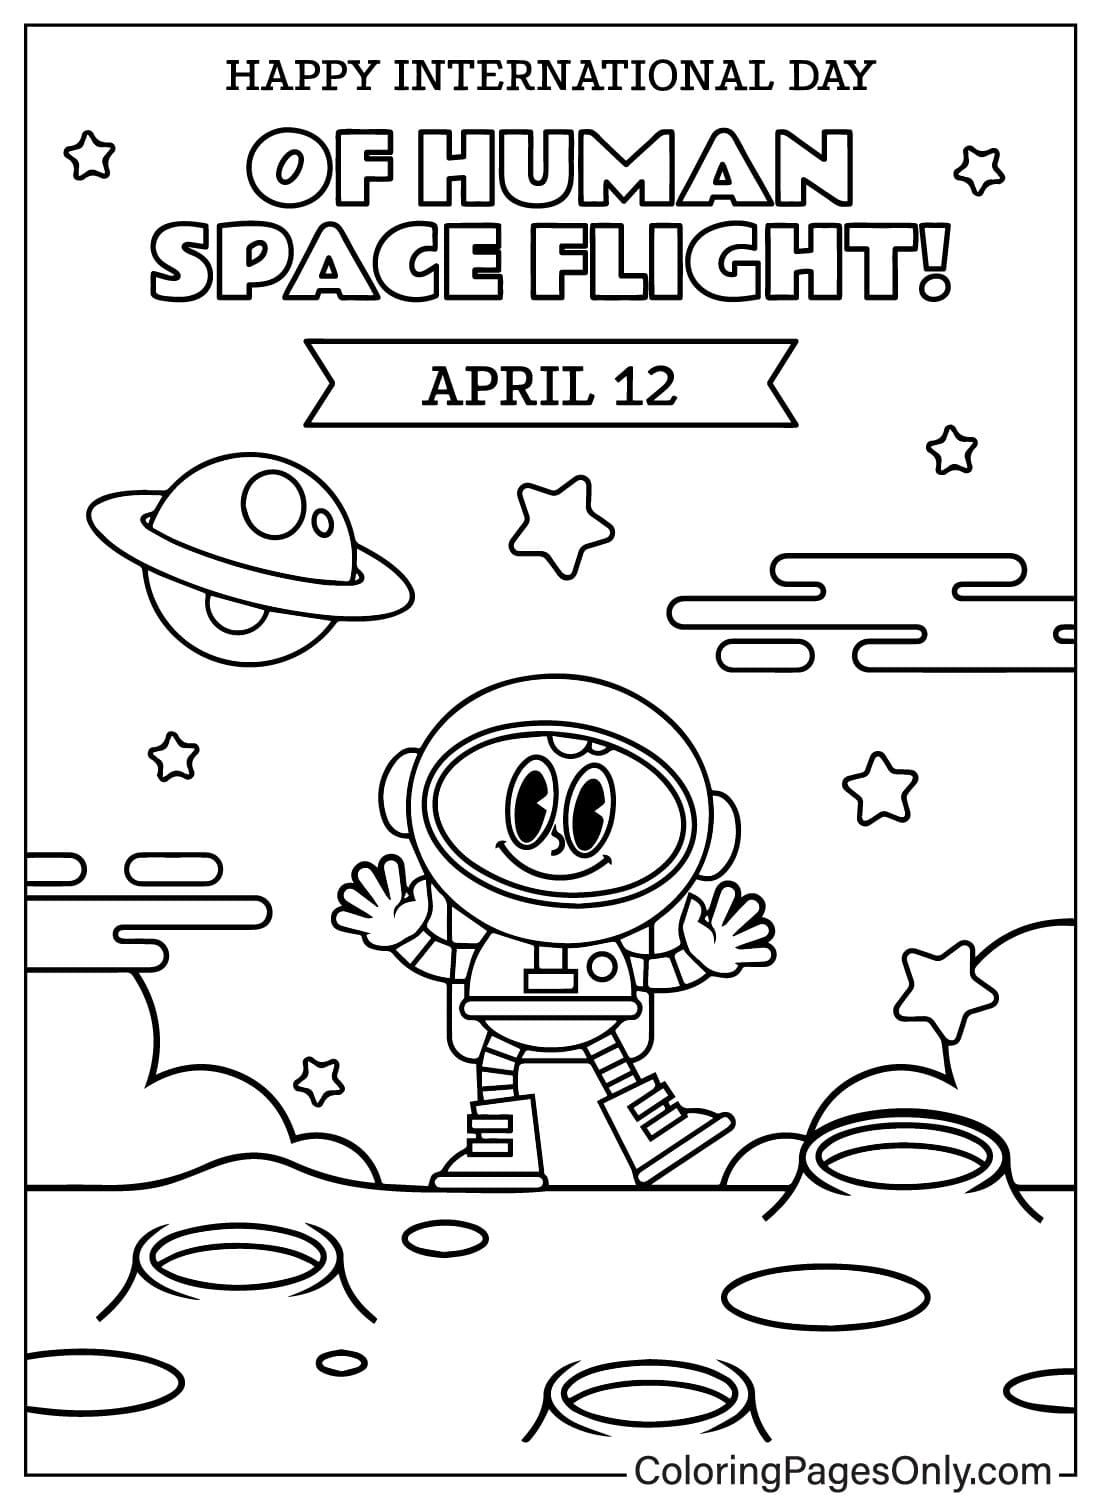 Página para colorear del Día Internacional de los Vuelos Espaciales Tripulados para imprimir desde el Día Internacional de los Vuelos Espaciales Tripulados